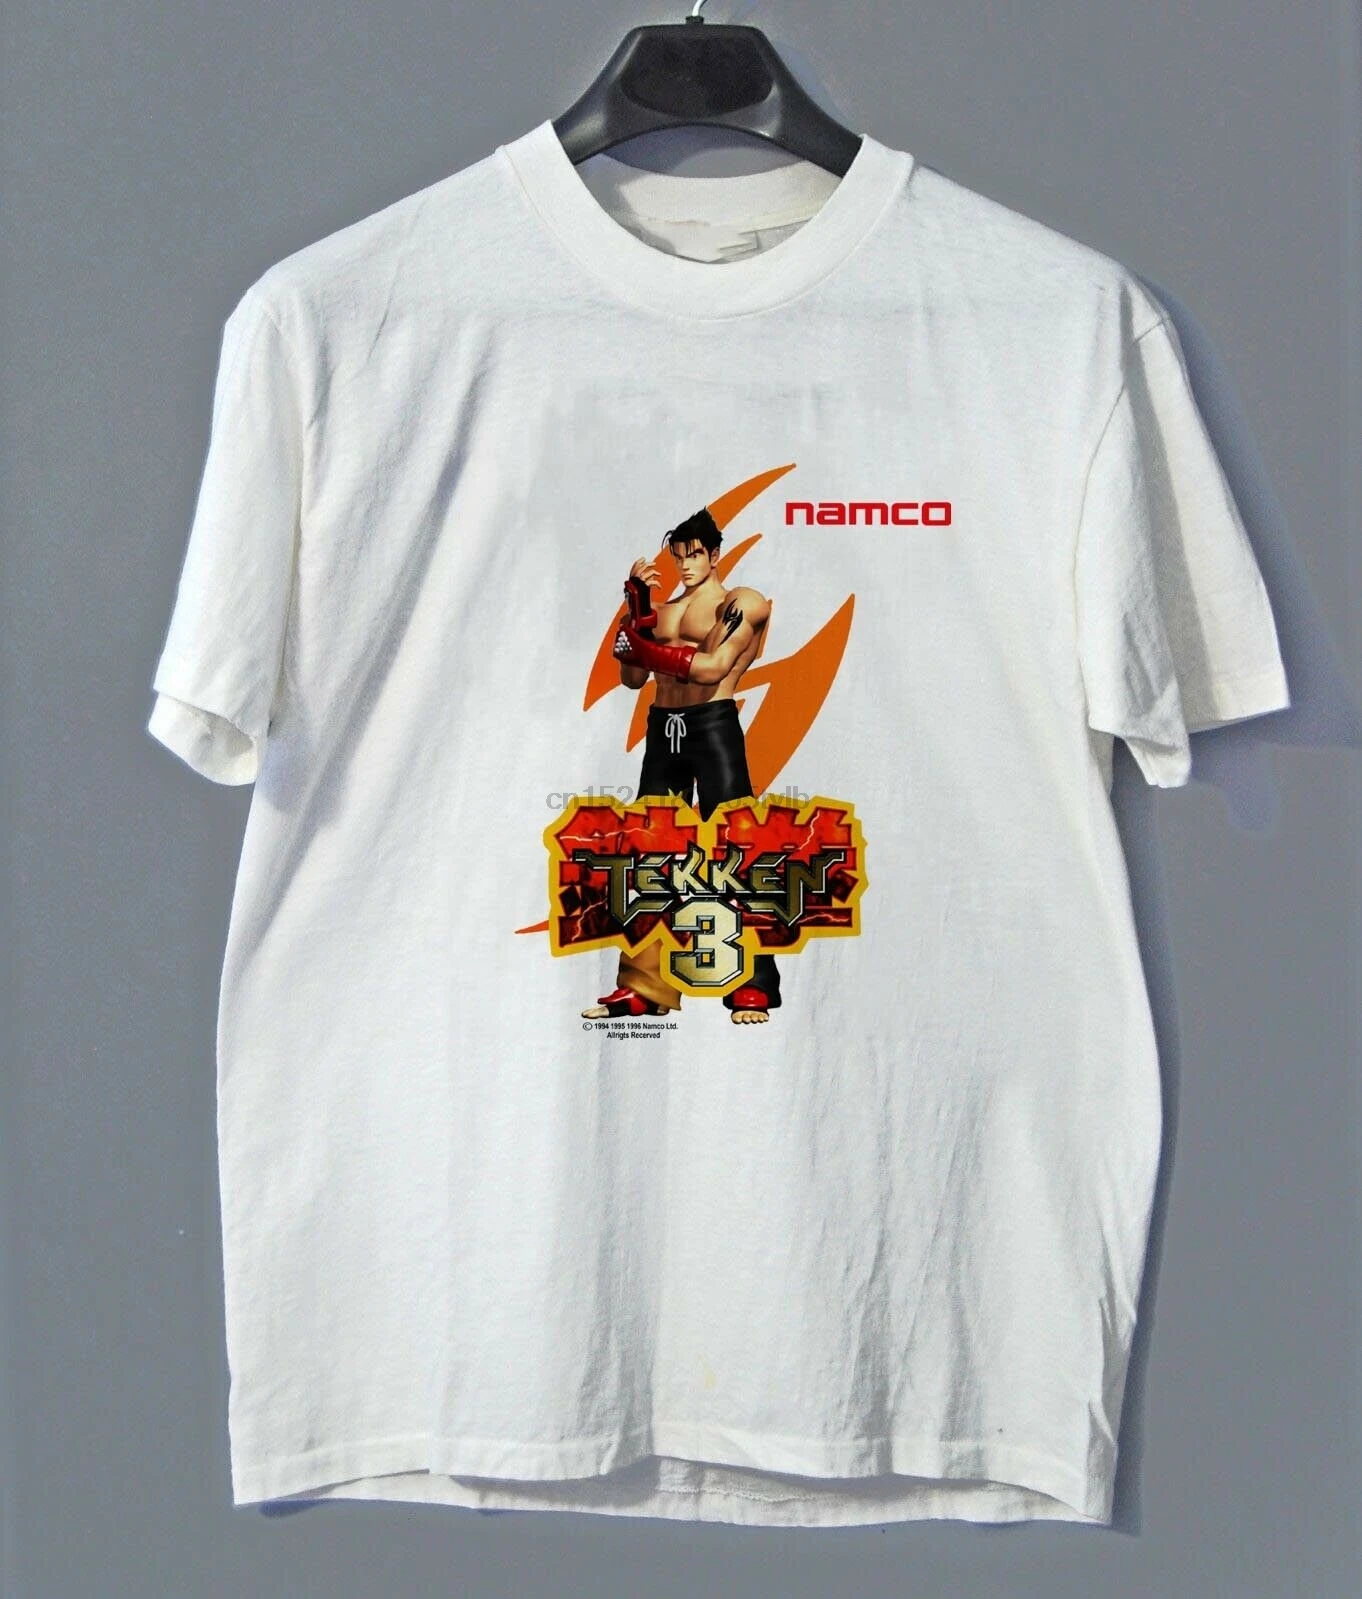 Tekken gift PlayStation Mortal Kombat Anime T-Shirt Tekken 3- Tekken Logo Gamer T-Shirt Tekken 3 T-Shirt- Gaming T-Shirt